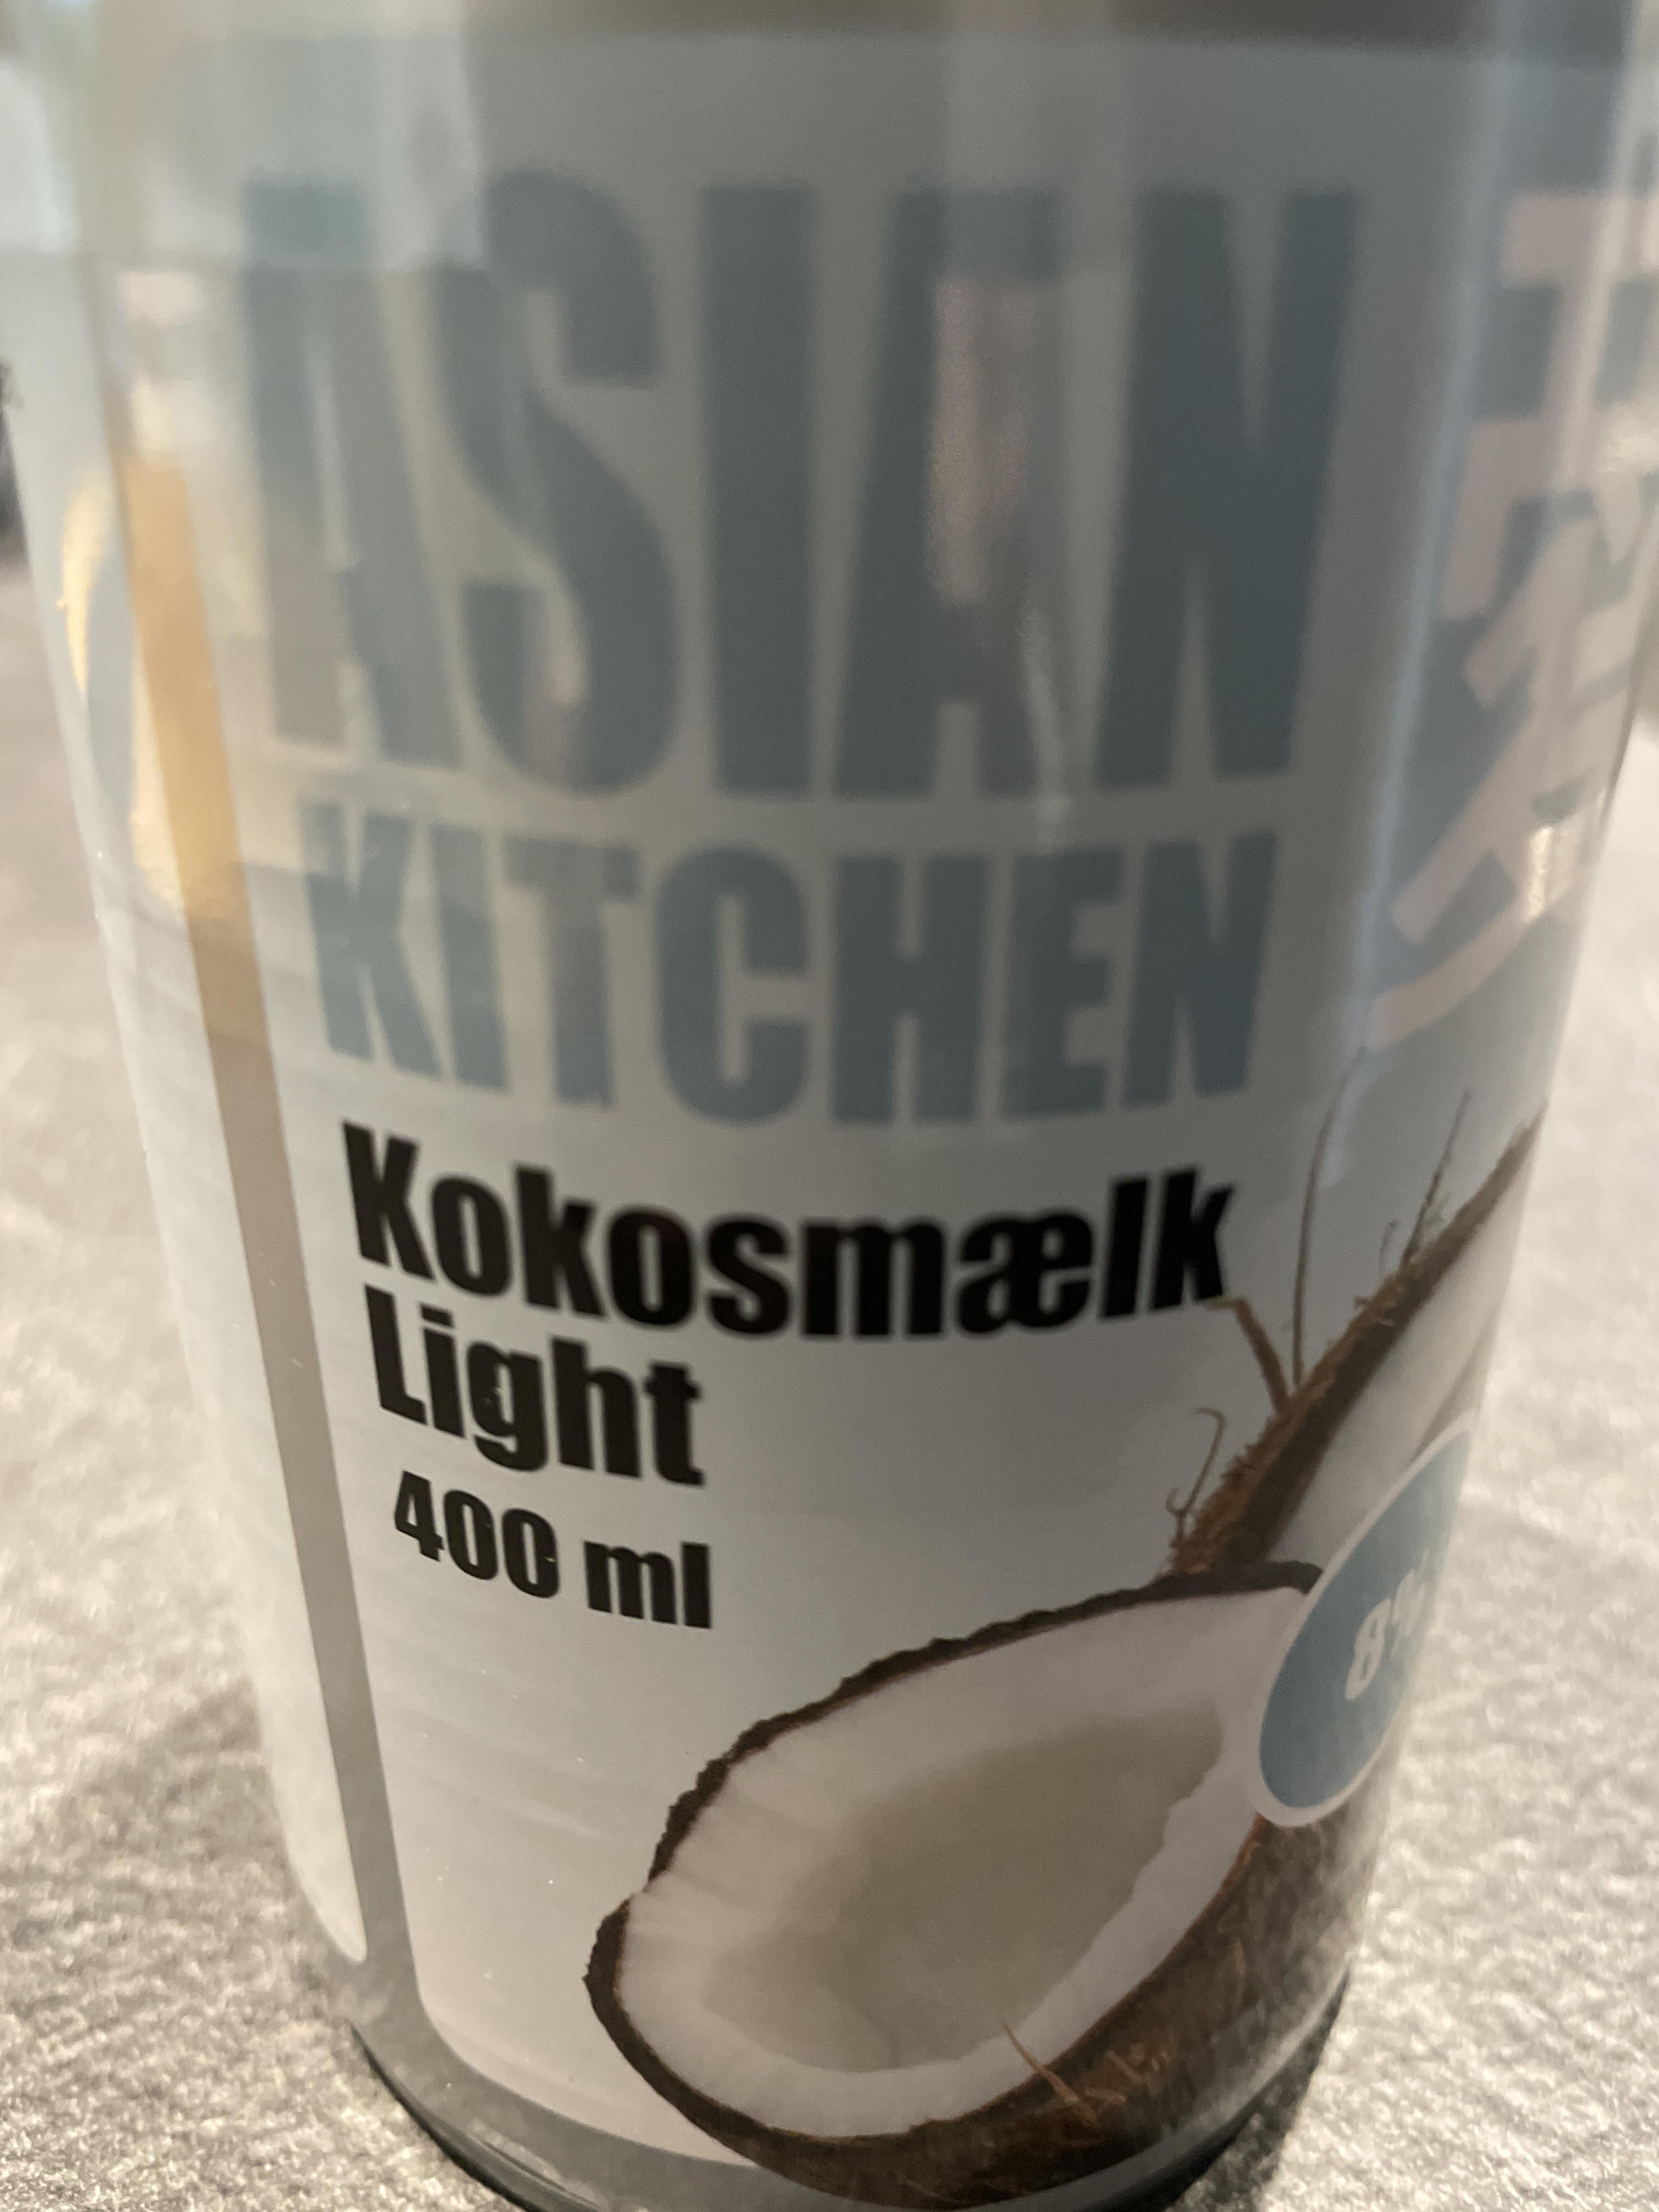 tråd Forudsætning Glat Kokosmælk light - Konsummælk og mælkekonserves - Fødevarer - Vægttab.nu